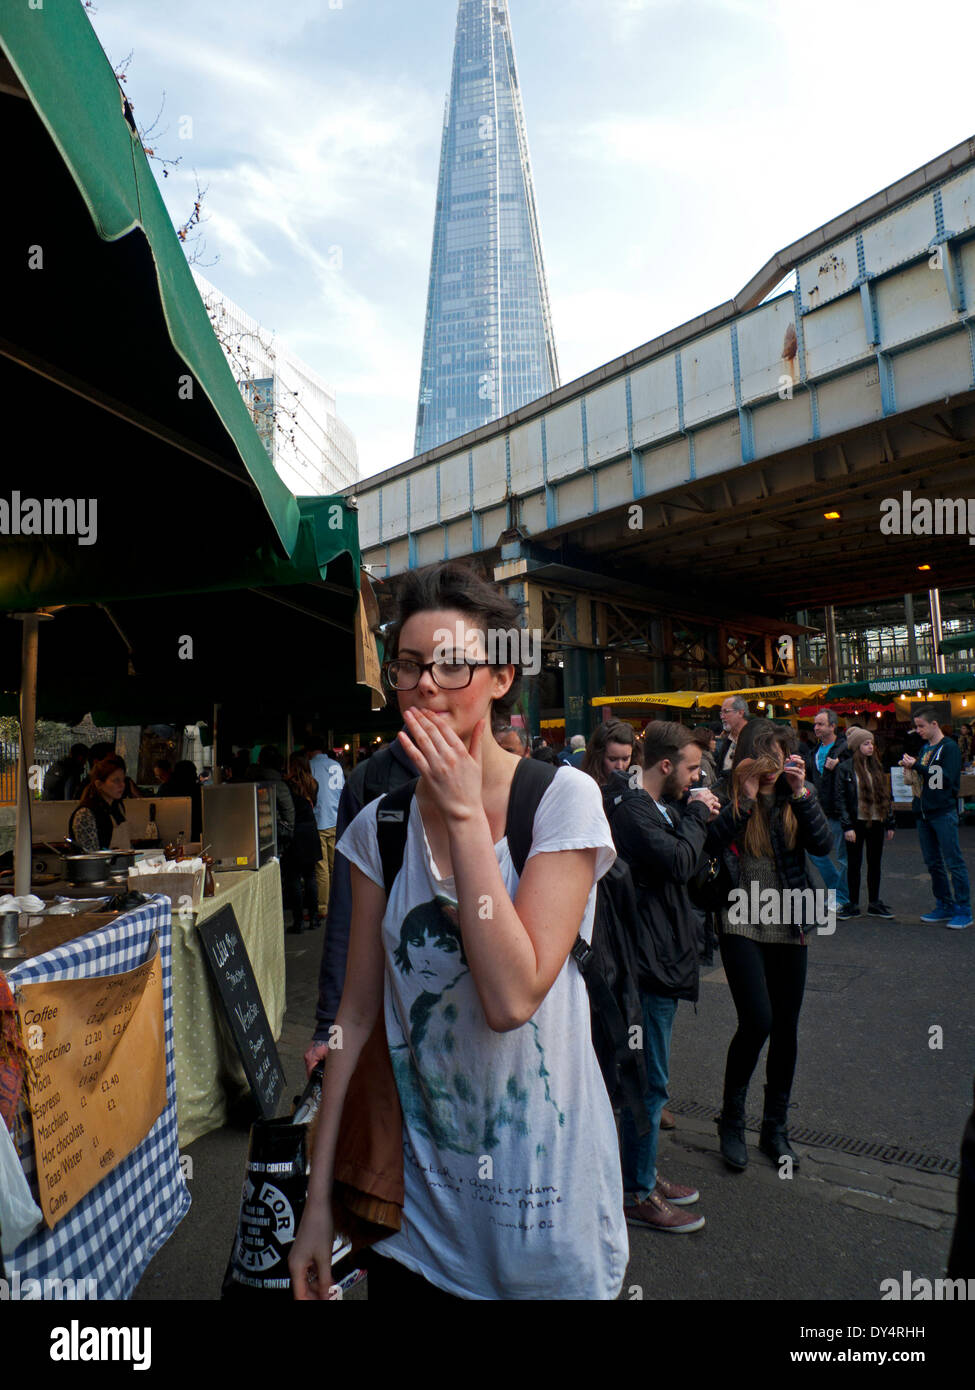 Junge Frau vorbeigehen Essen Stände durch die open-air-Gelände der Borough Market, London Bridge, London, UK KATHY DEWITT Stockfoto